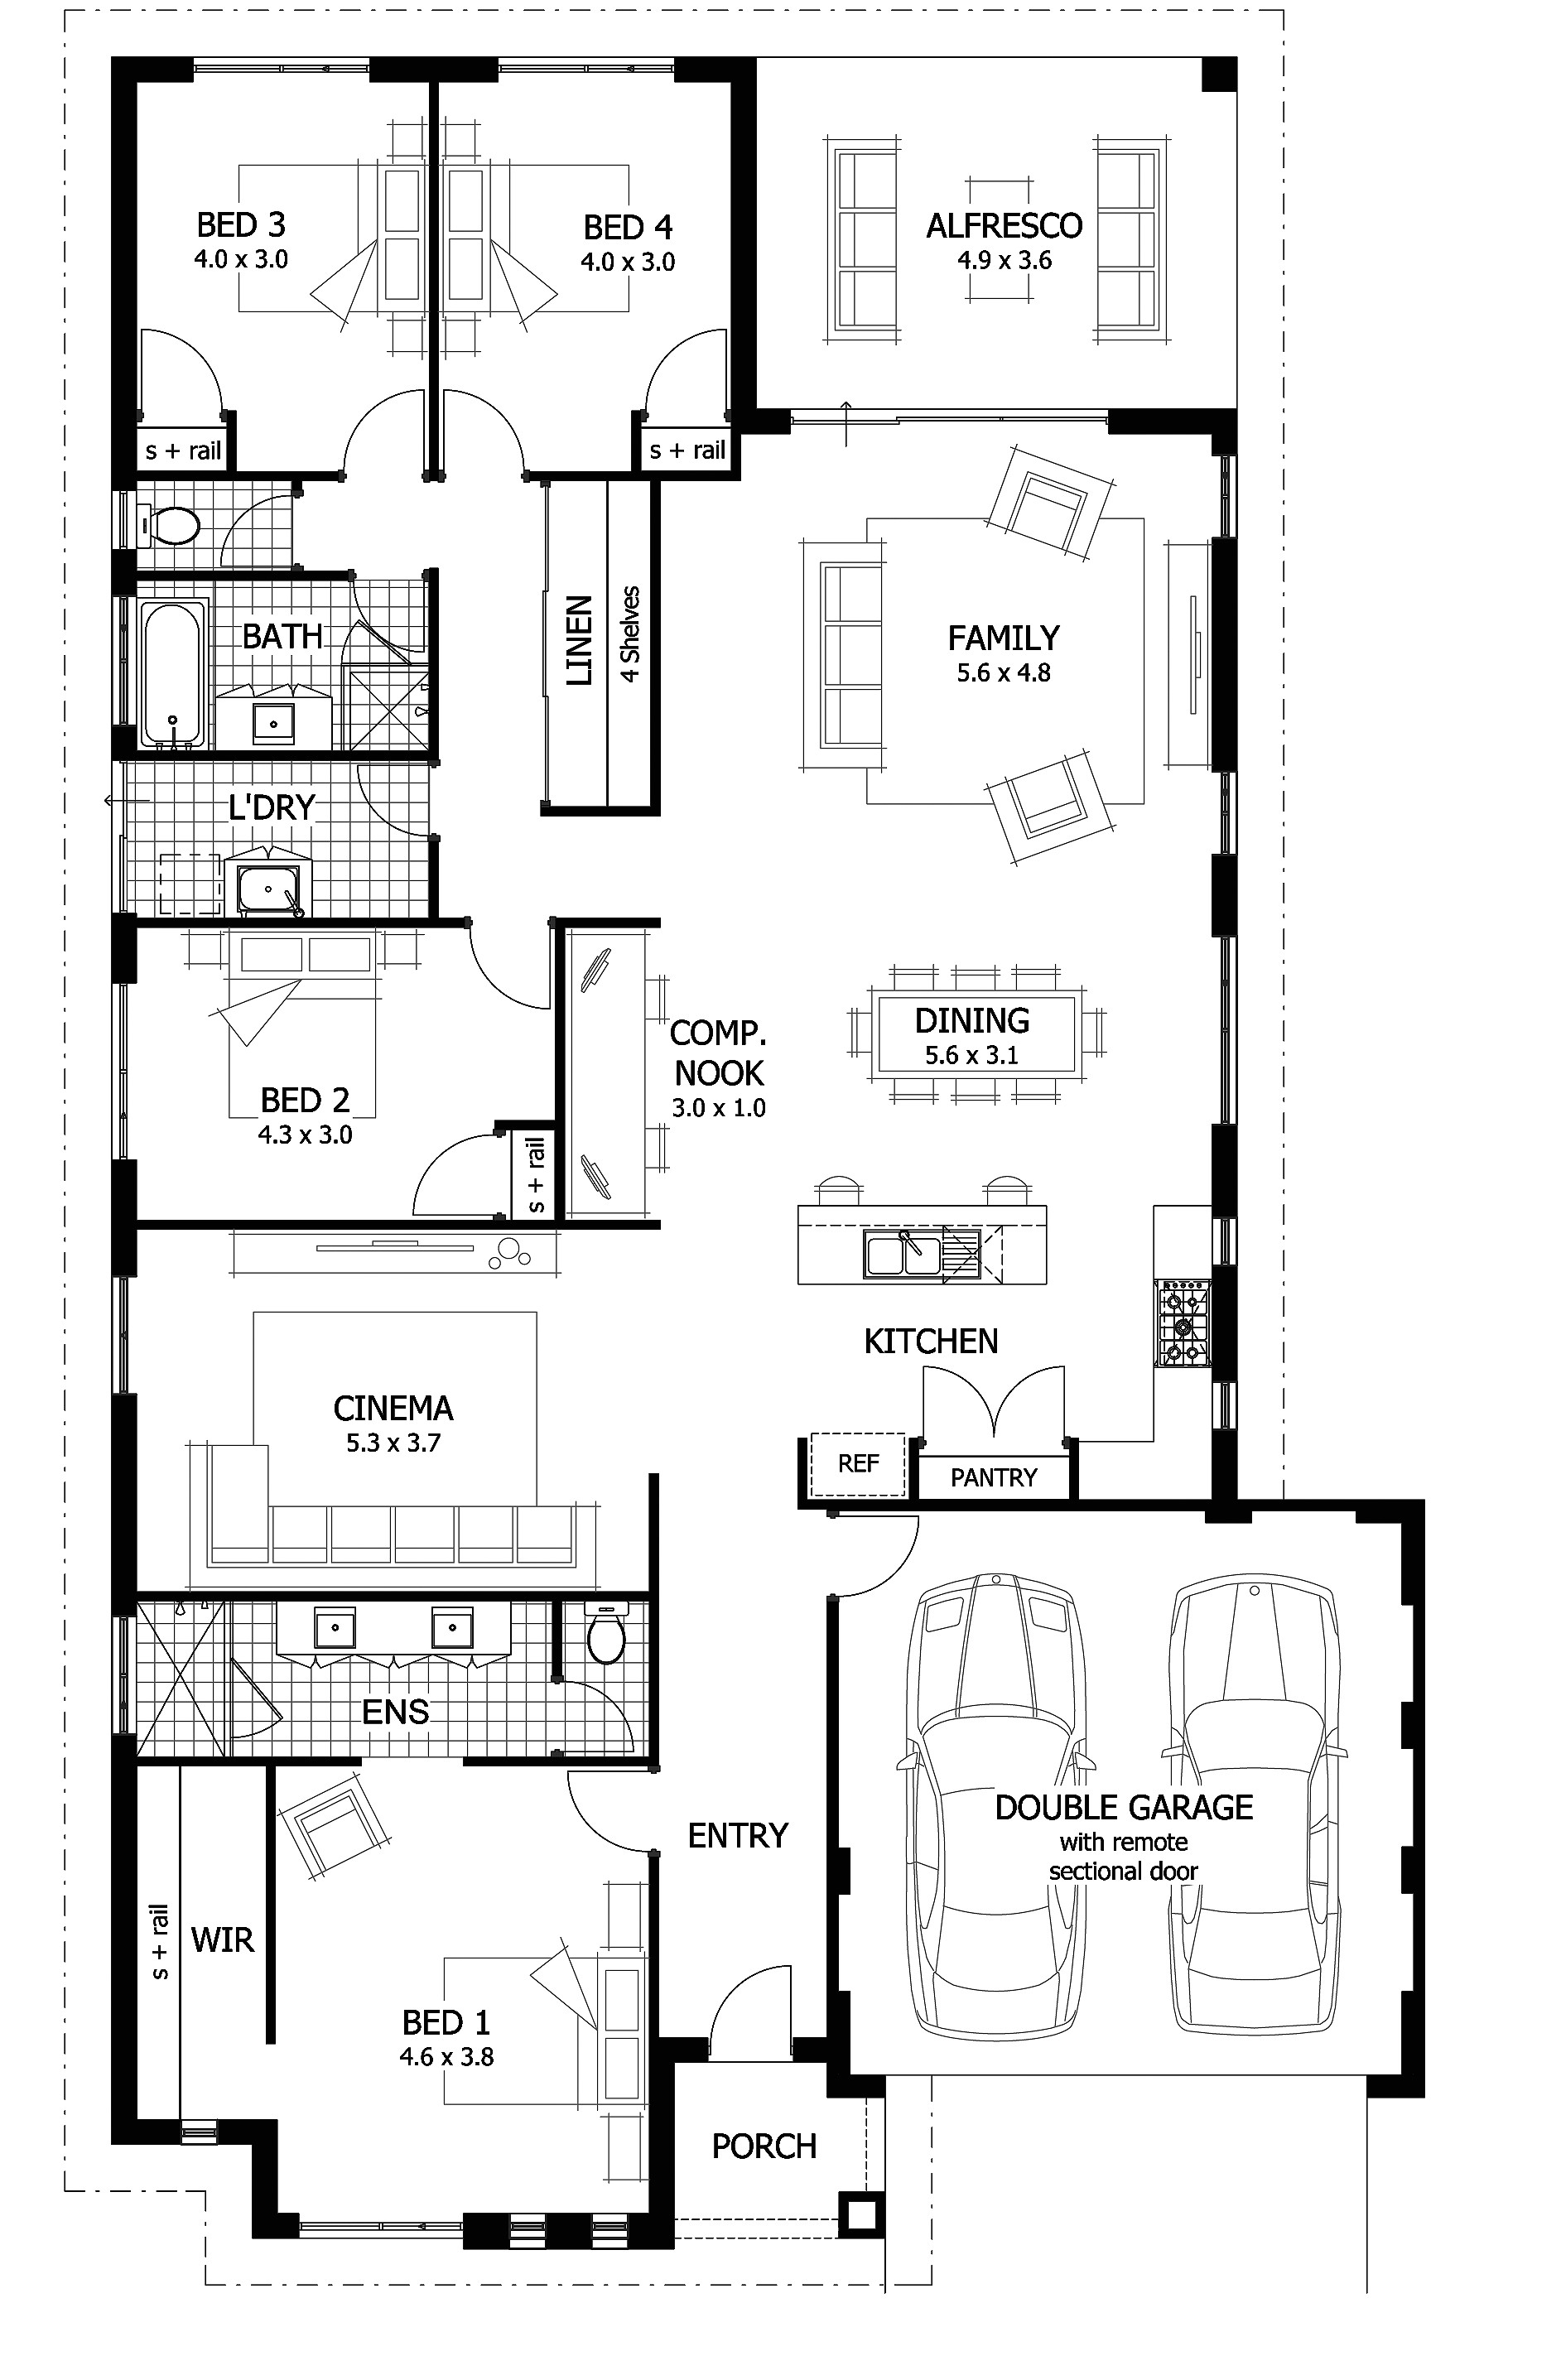 luxury home floor plans australia